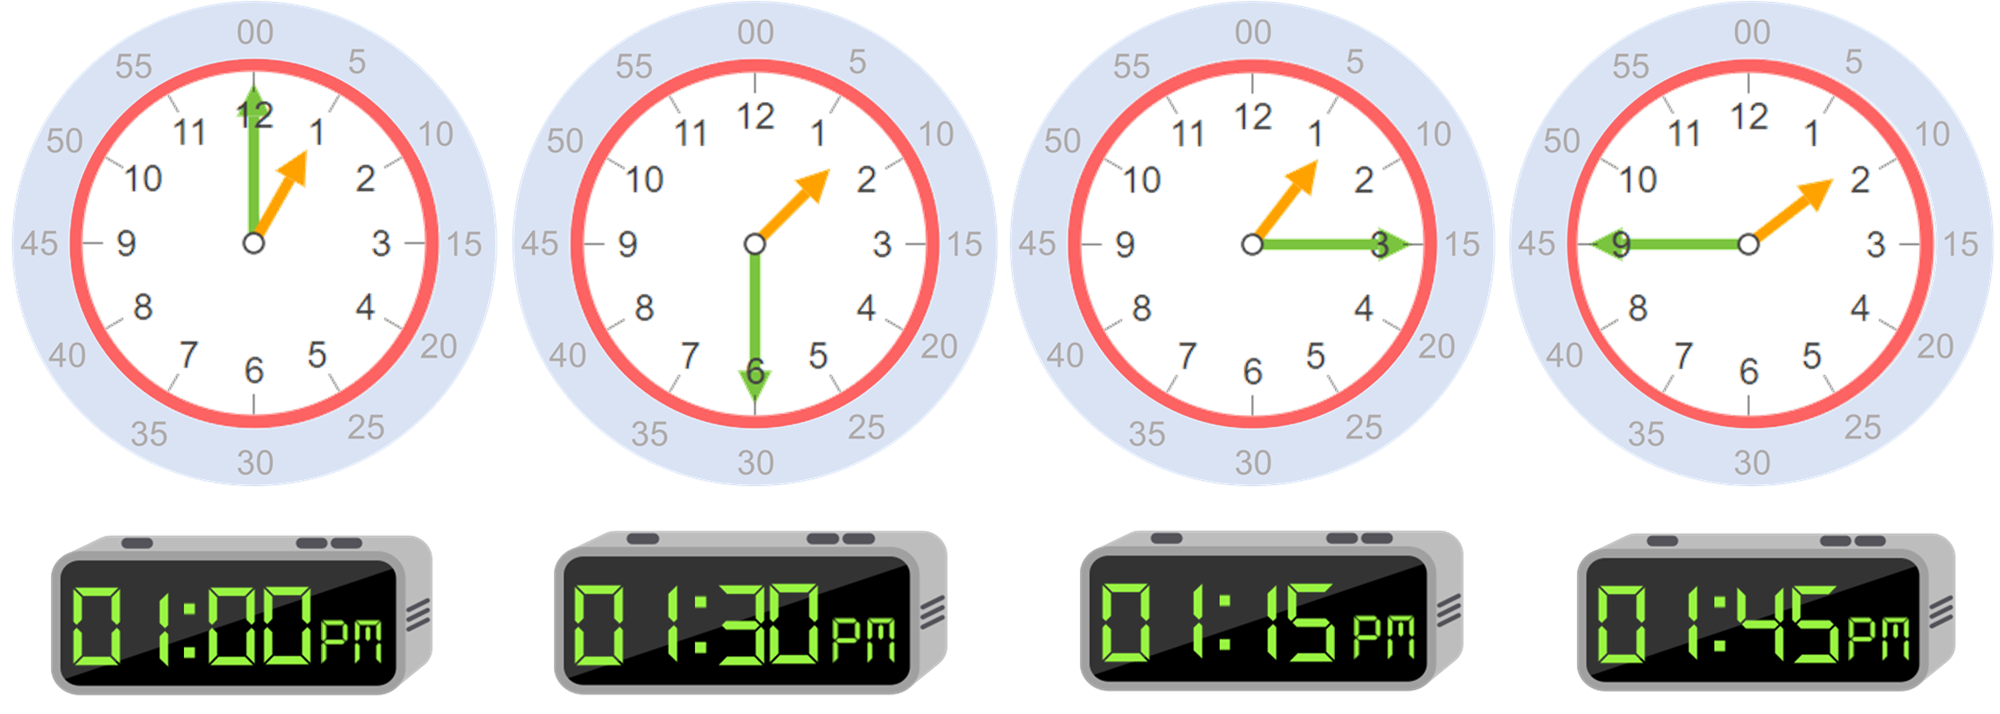 Culo Marquesina garaje Horas: conceptos básicos para aprender a leer la hora en un reloj - Smartick